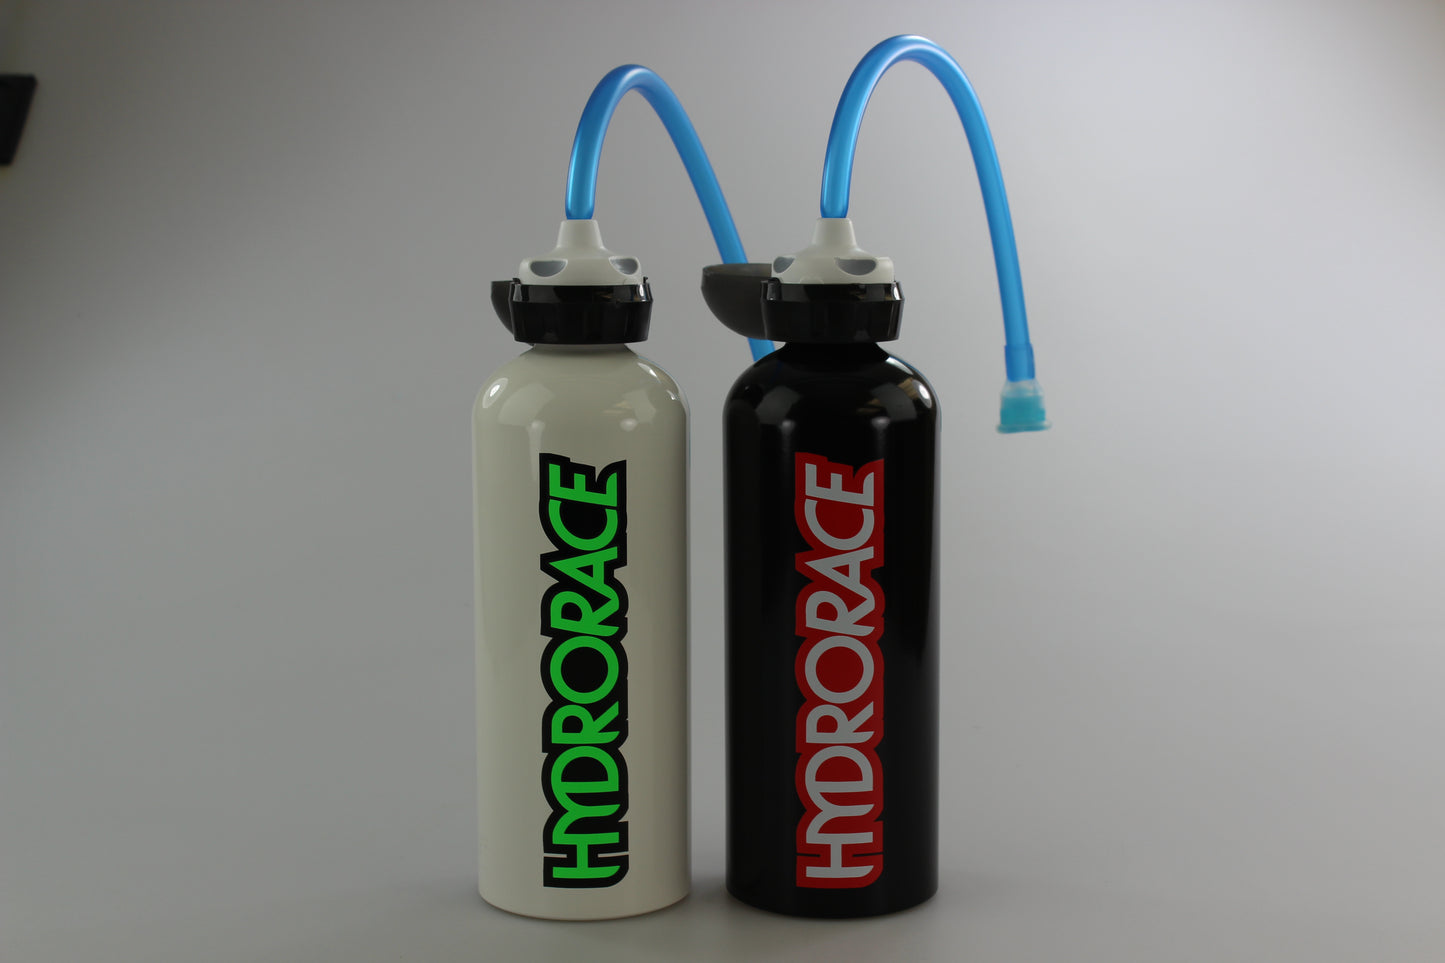 HYDRORACE 1L Bottle